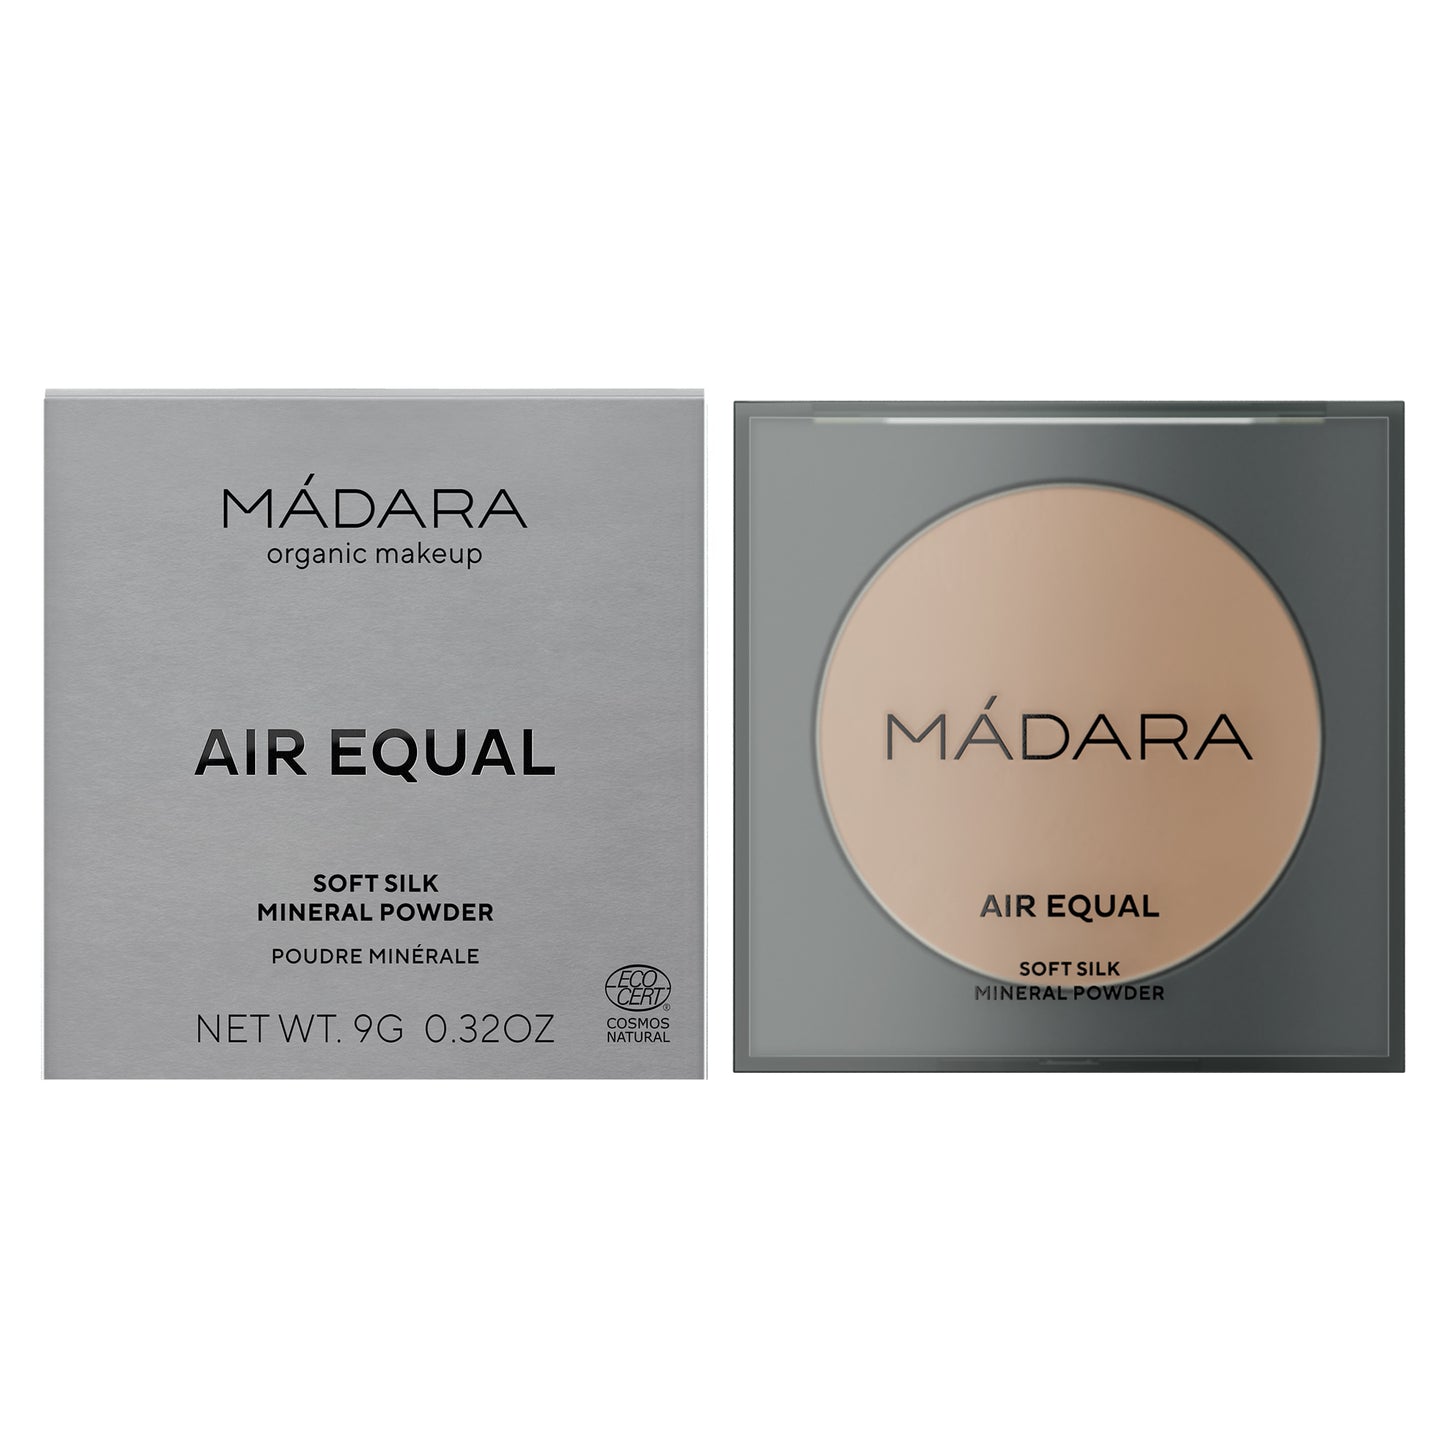 MADARA - AIR EQUAL soft silk mineral powder 9g